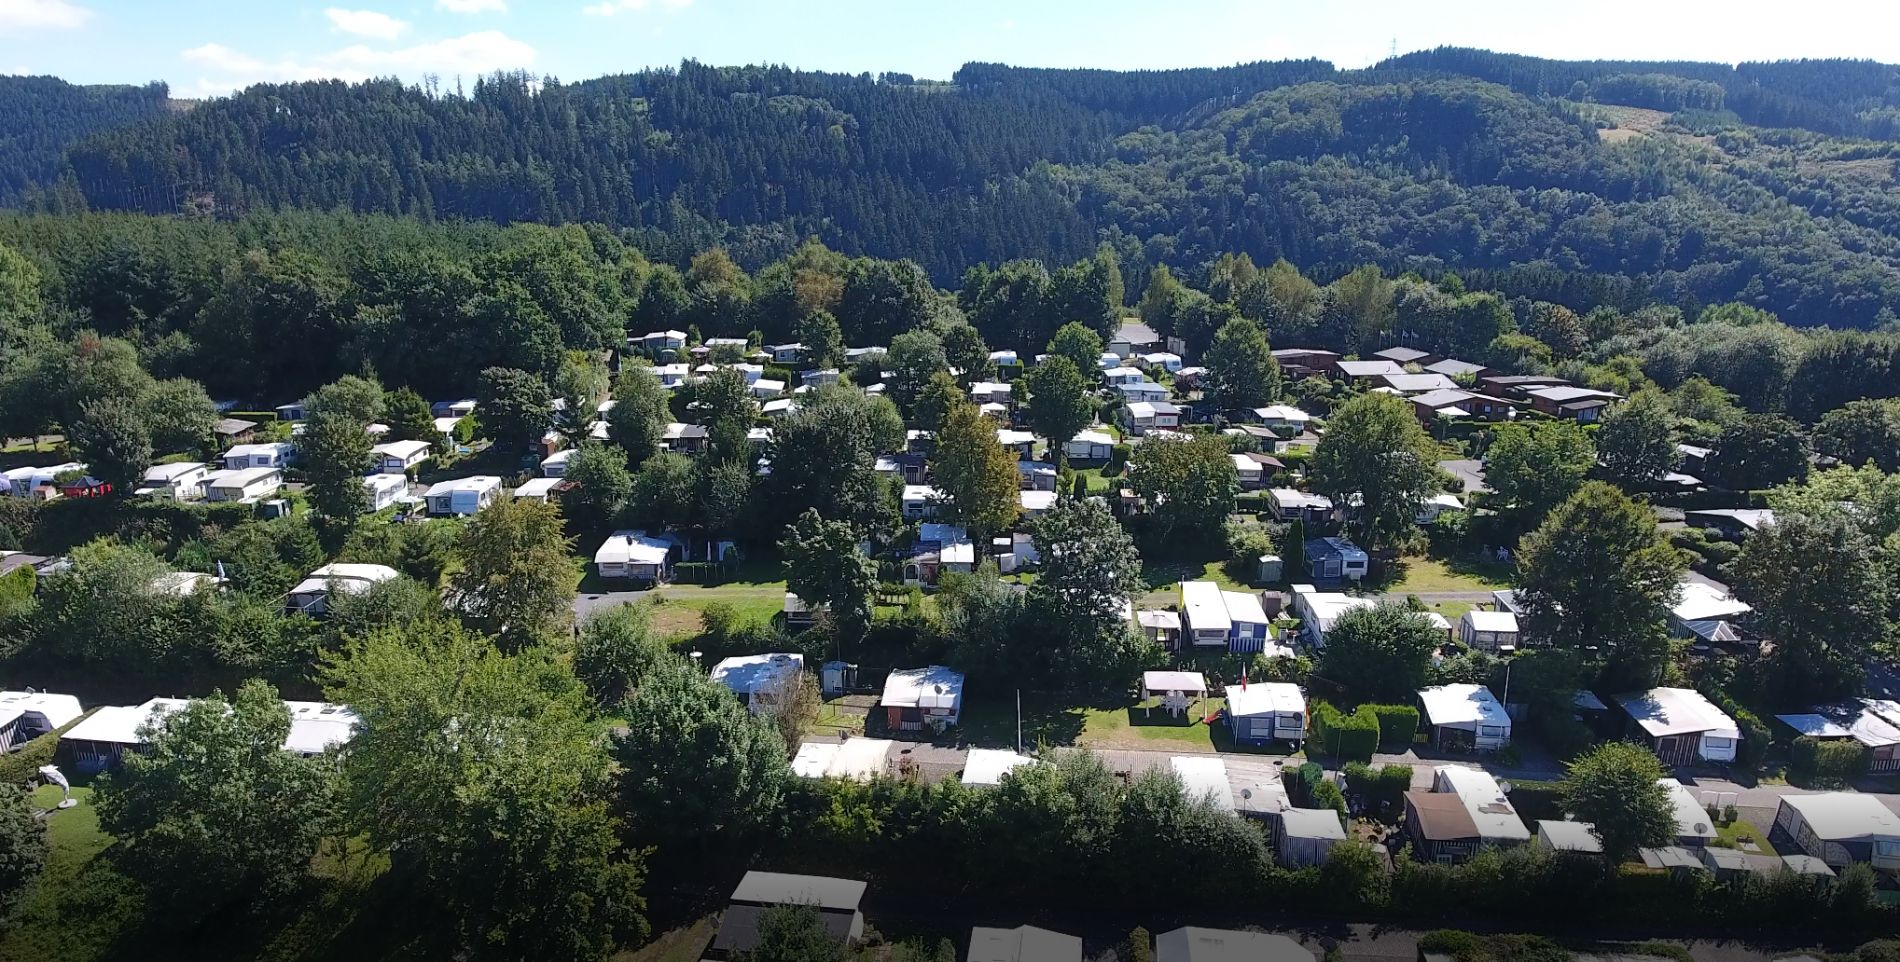 Campingplatz Hof Biggen - Informationen rund um Camping am Hof Biggen